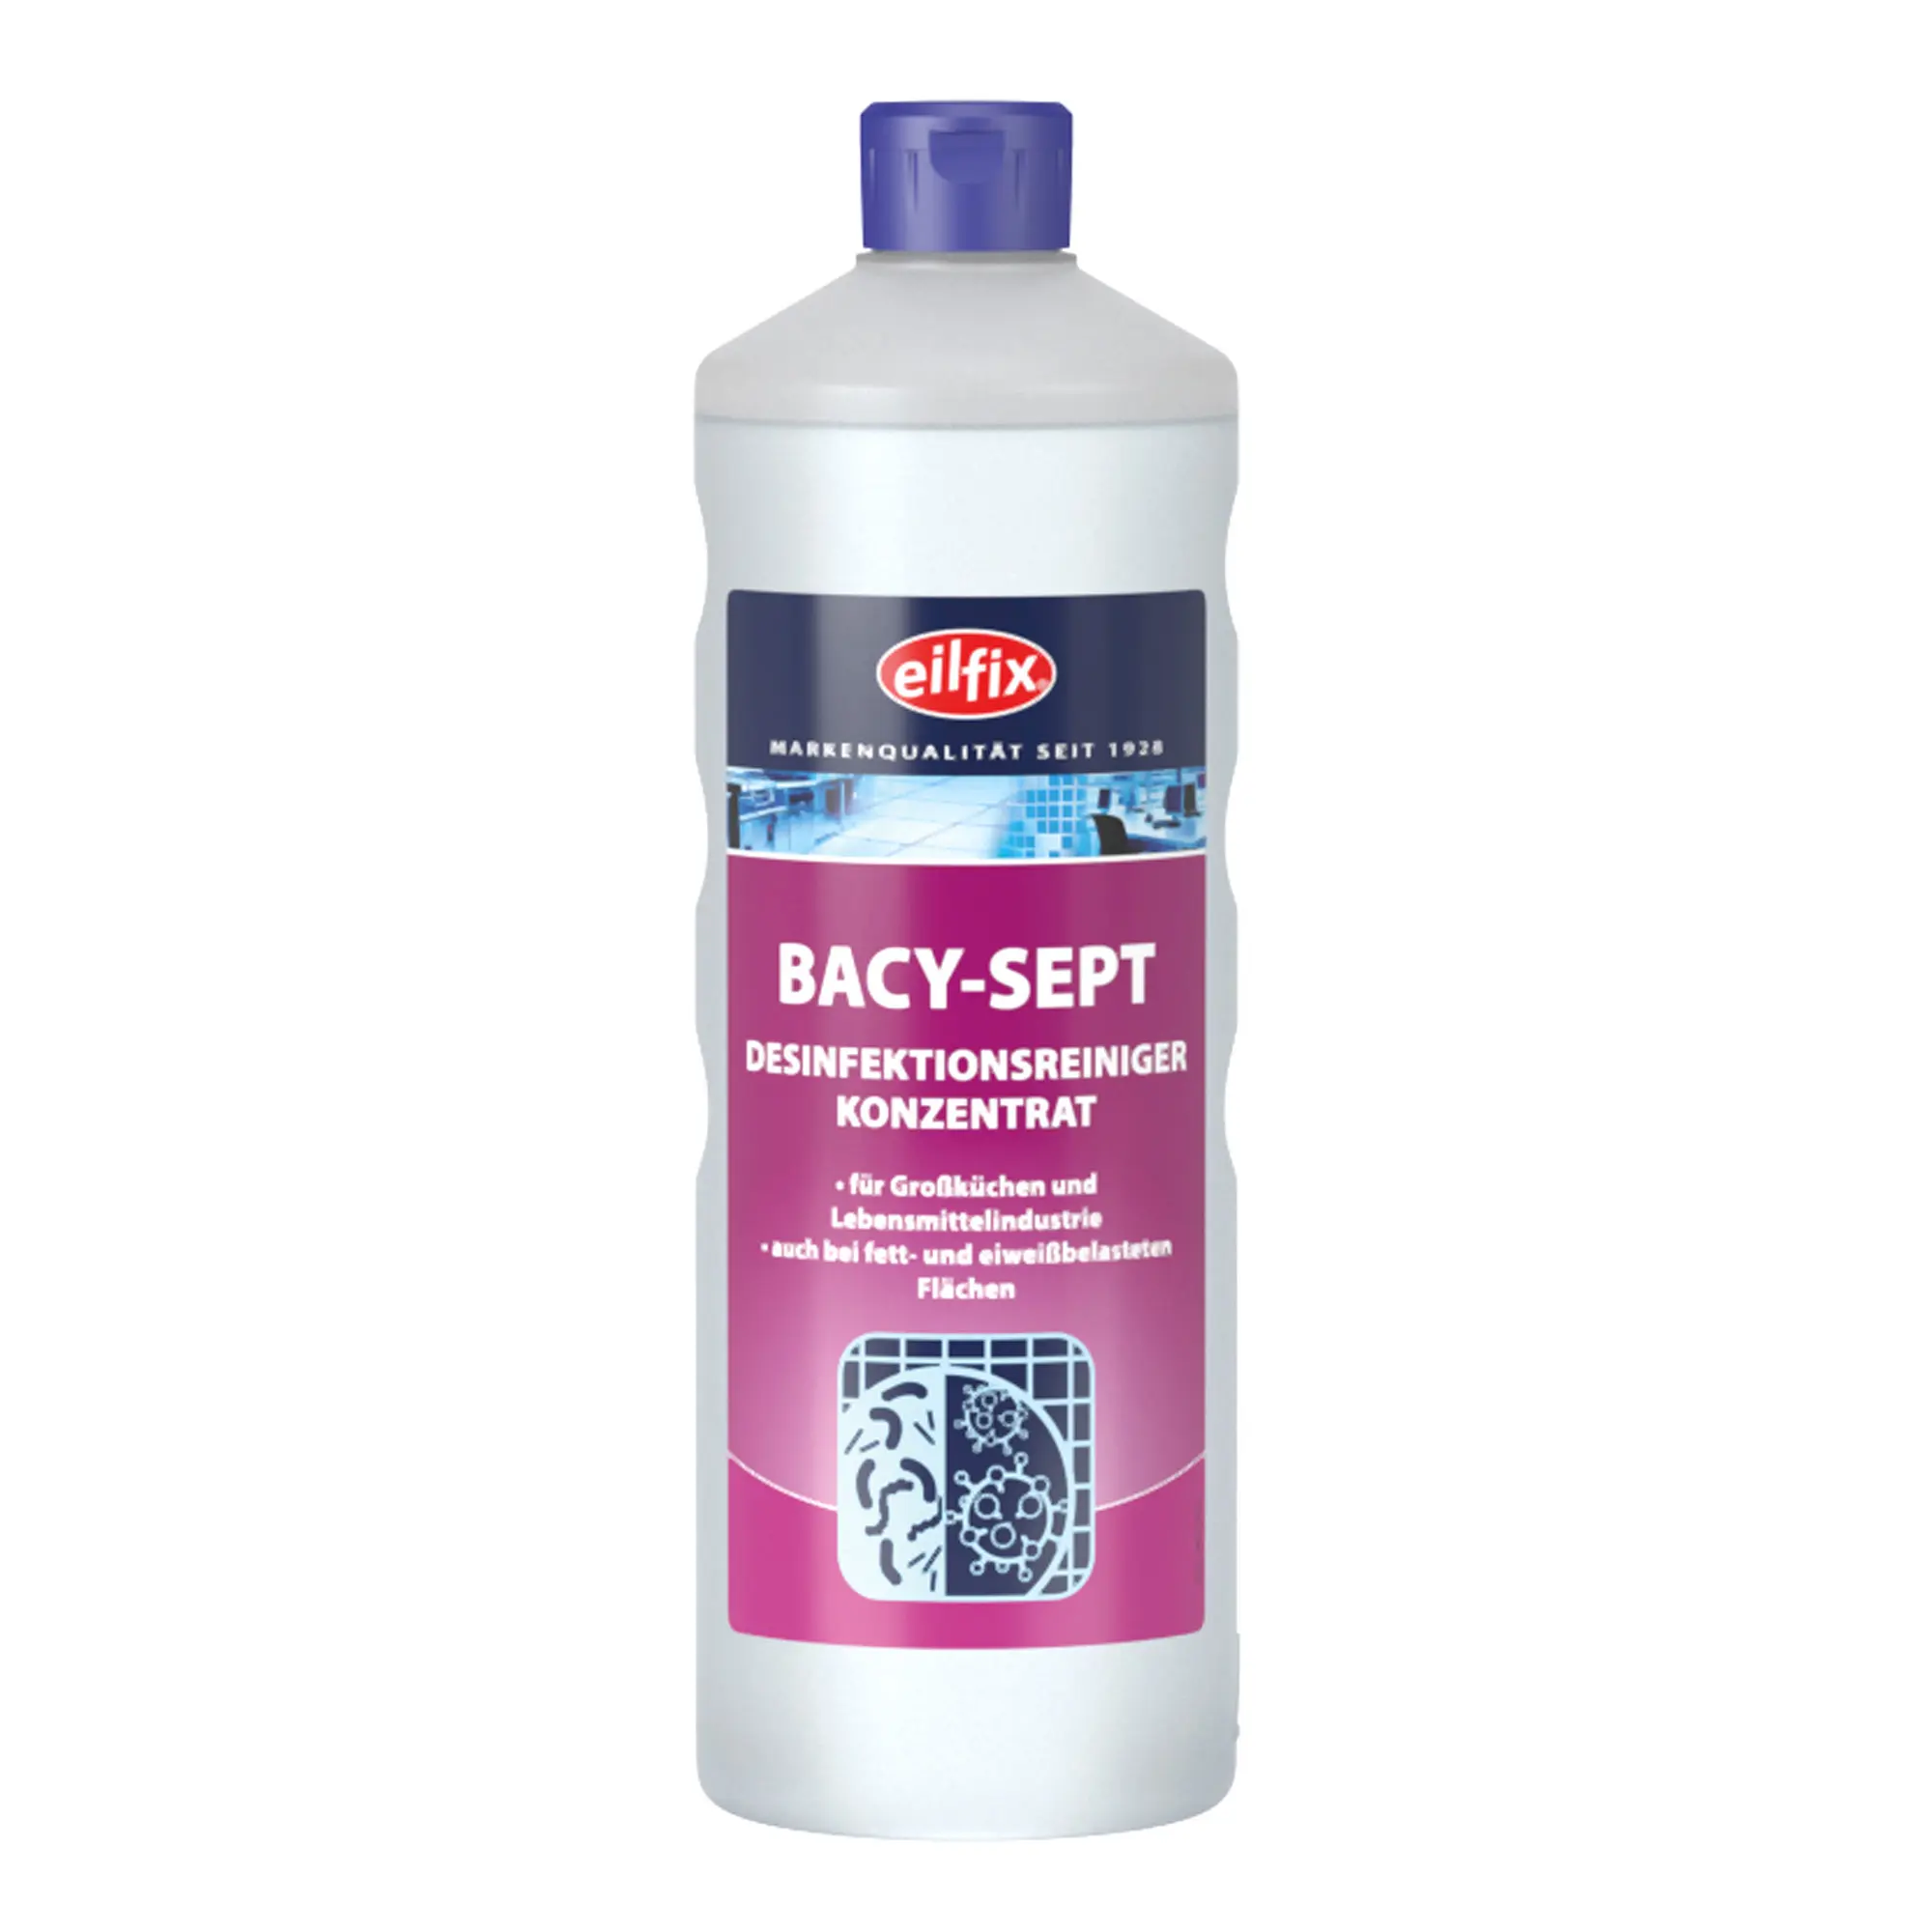 Eilfix Bacy-Sept Desinfektionsreiniger 1 Liter Flasche 100054-001-000_1